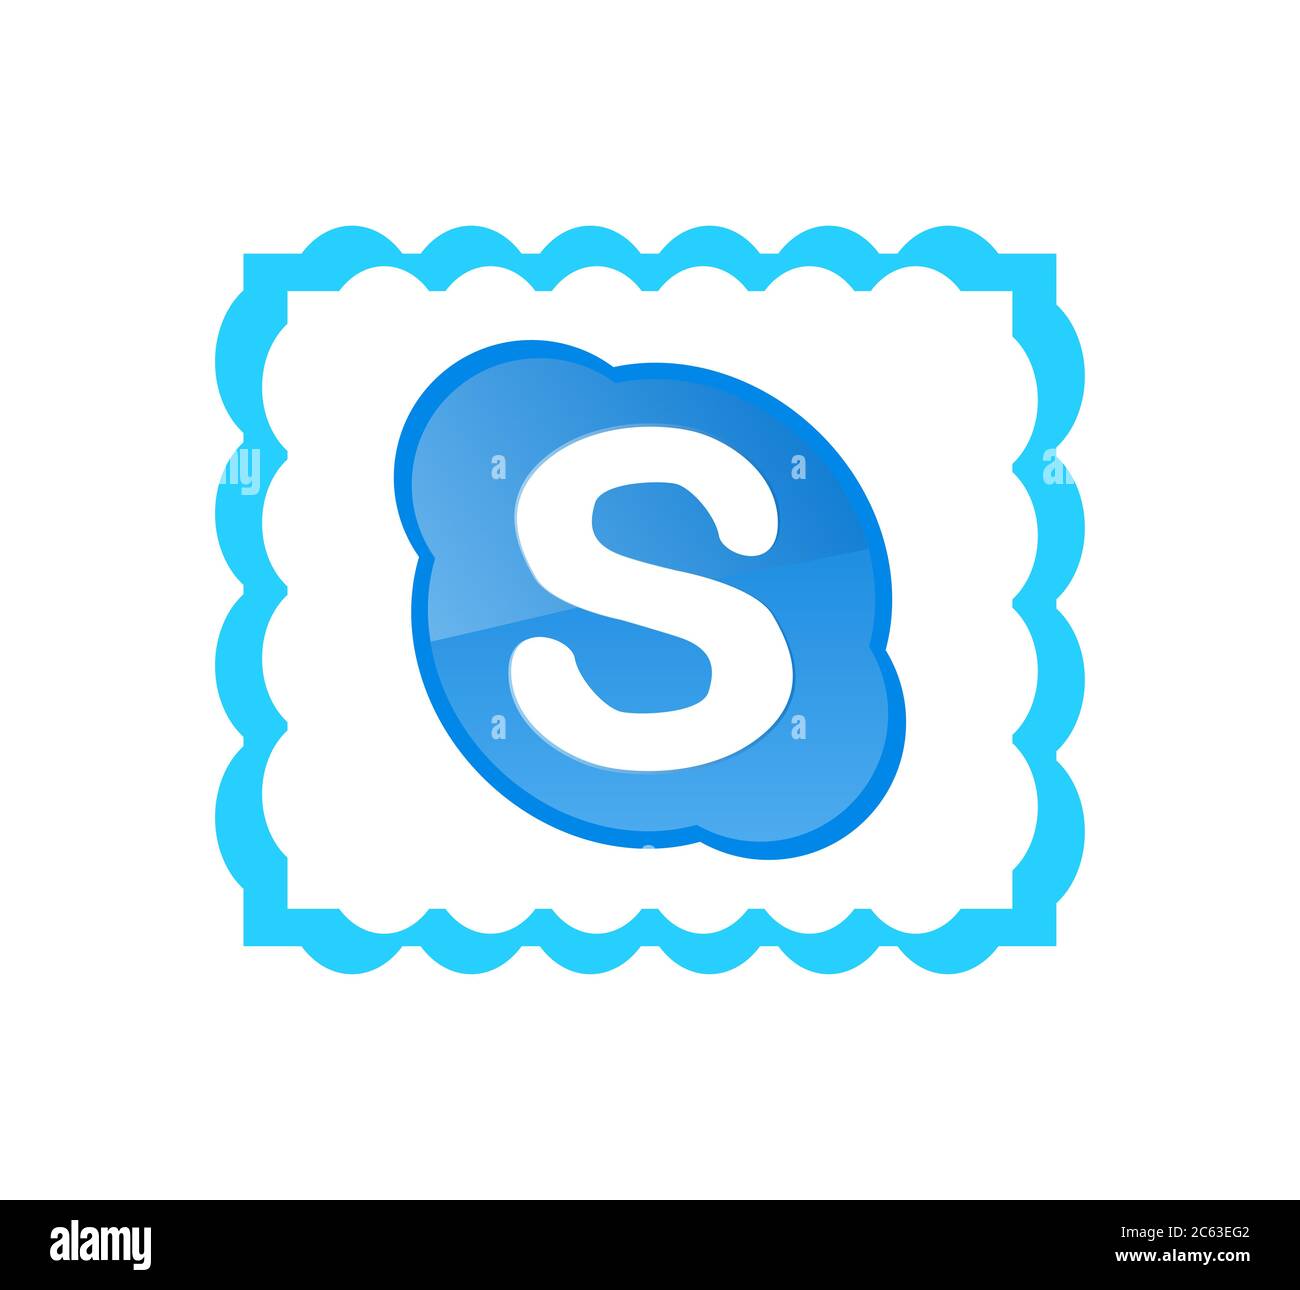 Nếu bạn muốn giữ liên lạc với gia đình, bạn bè hay đồng nghiệp ở bất cứ nơi nào trên thế giới, hãy tải Skype ngay hôm nay! Bạn sẽ có thể gọi video và nhắn tin miễn phí với Skype, và trải nghiệm cảm giác như đang đối diện với họ trong phòng.